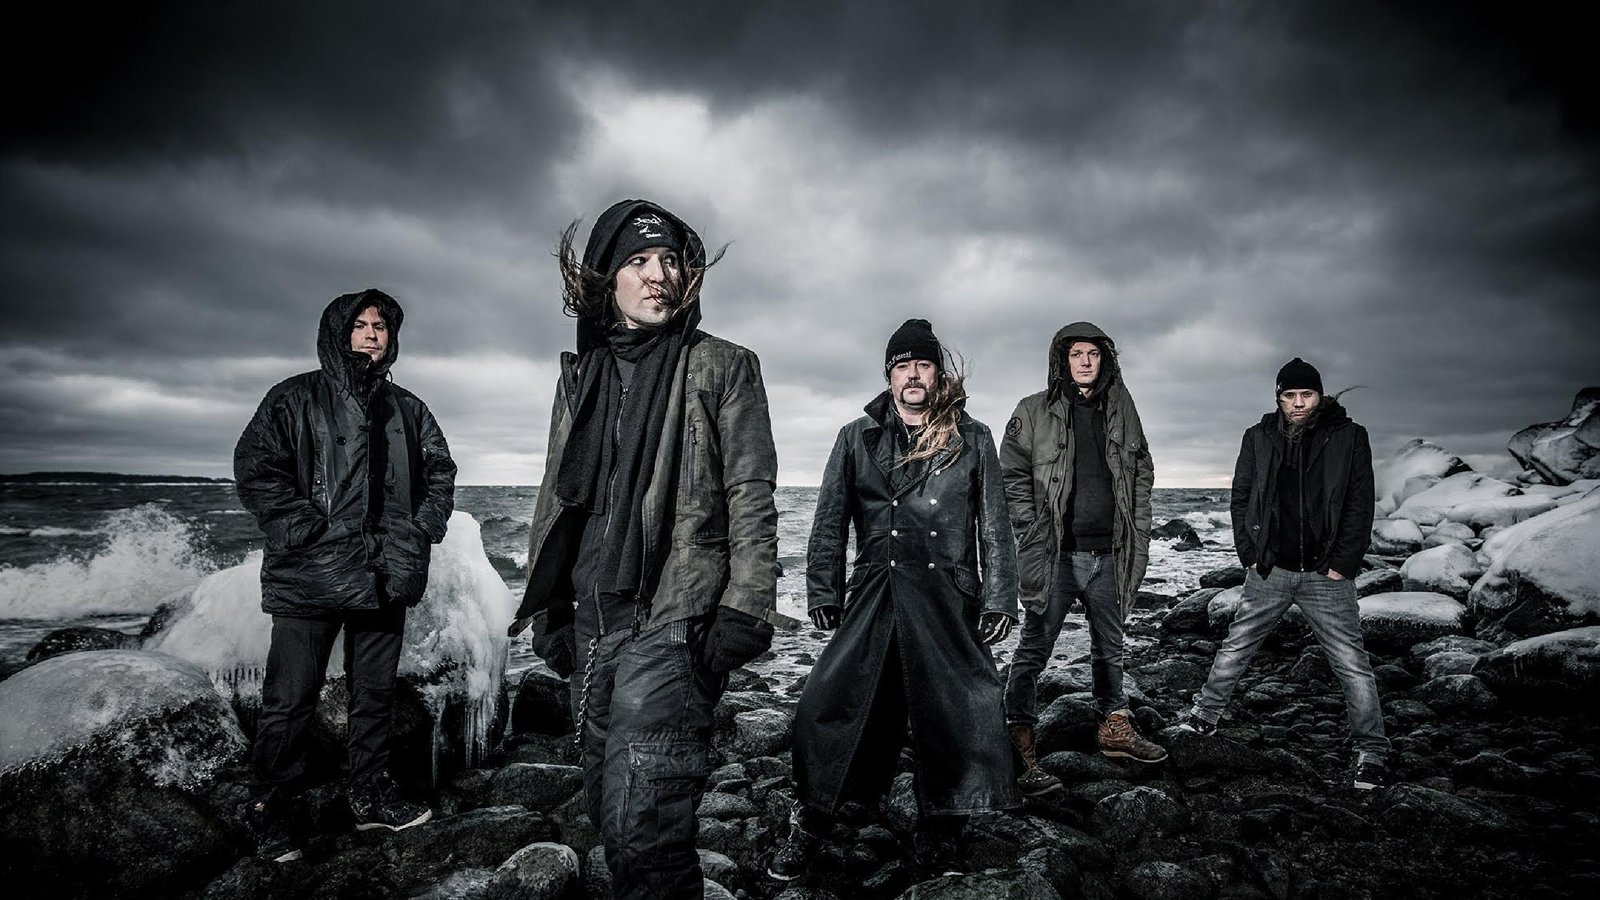 con 2019 Desbandada en Children of Bodom. Se quedan sin baterista, bajista y tecladista Summa Inferno | Metal + Rock & Alternative Music